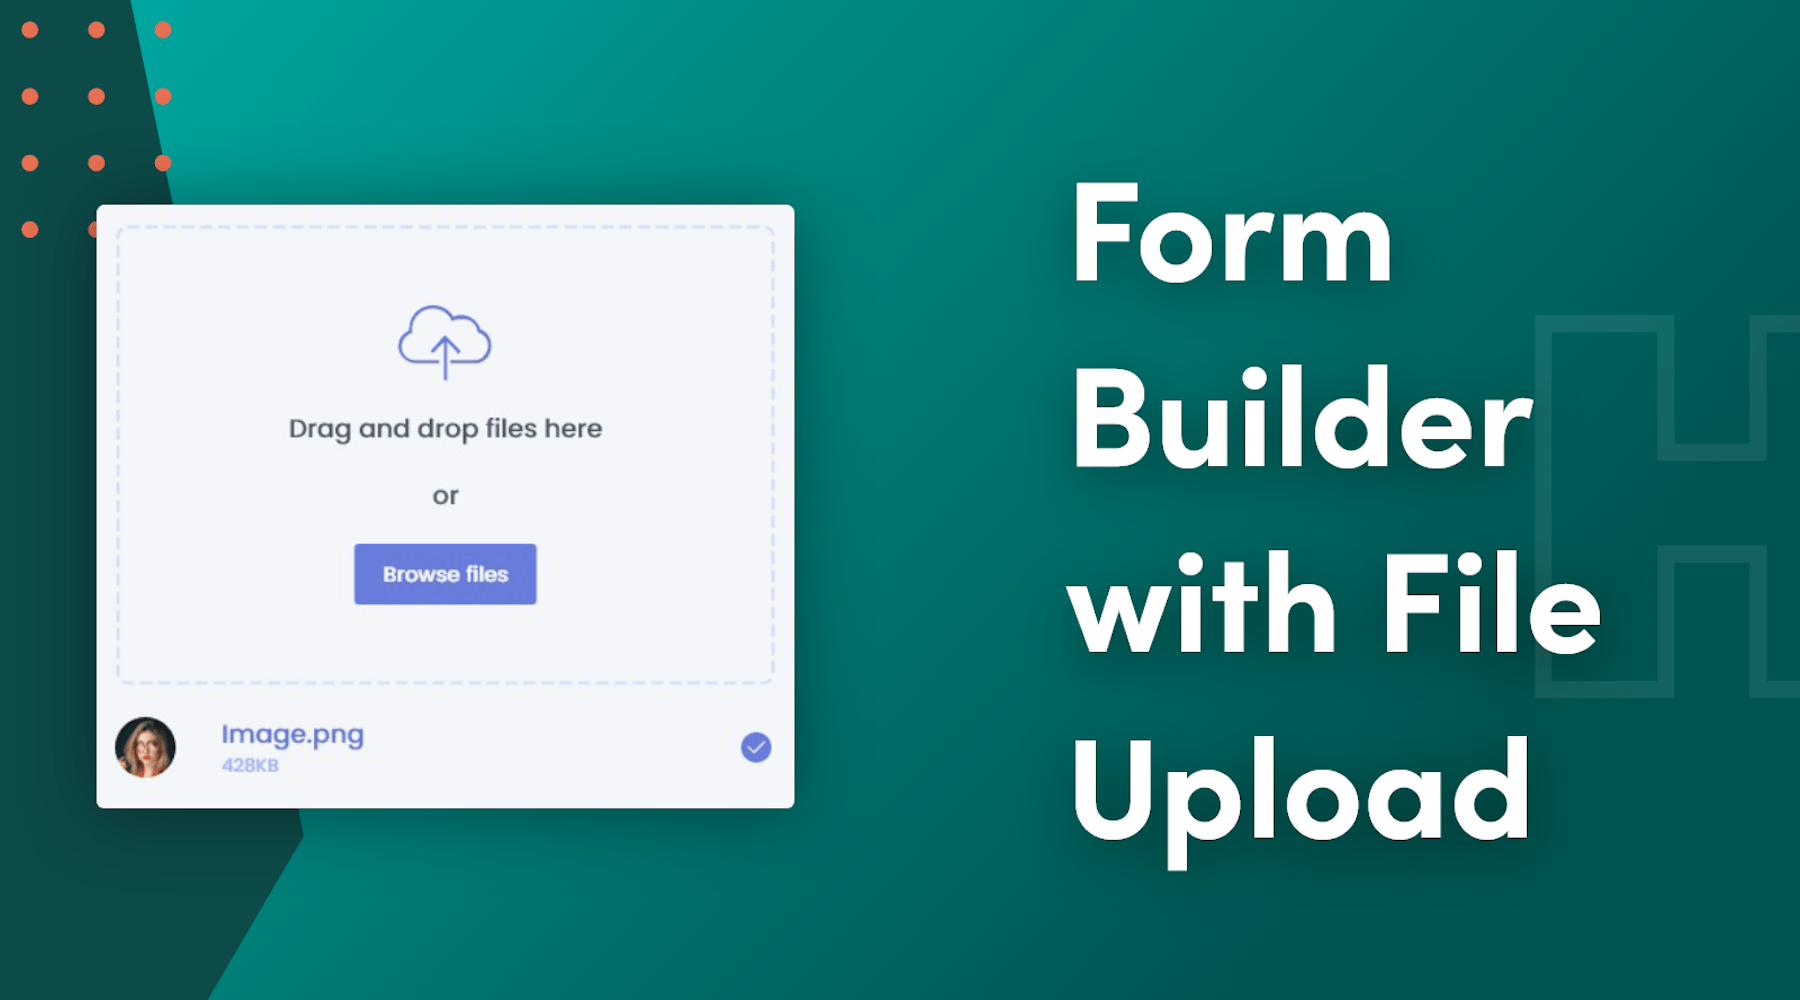 用 Shopify 的 Form Builder App 为 Etsy 的定制产品创建图片上传页面